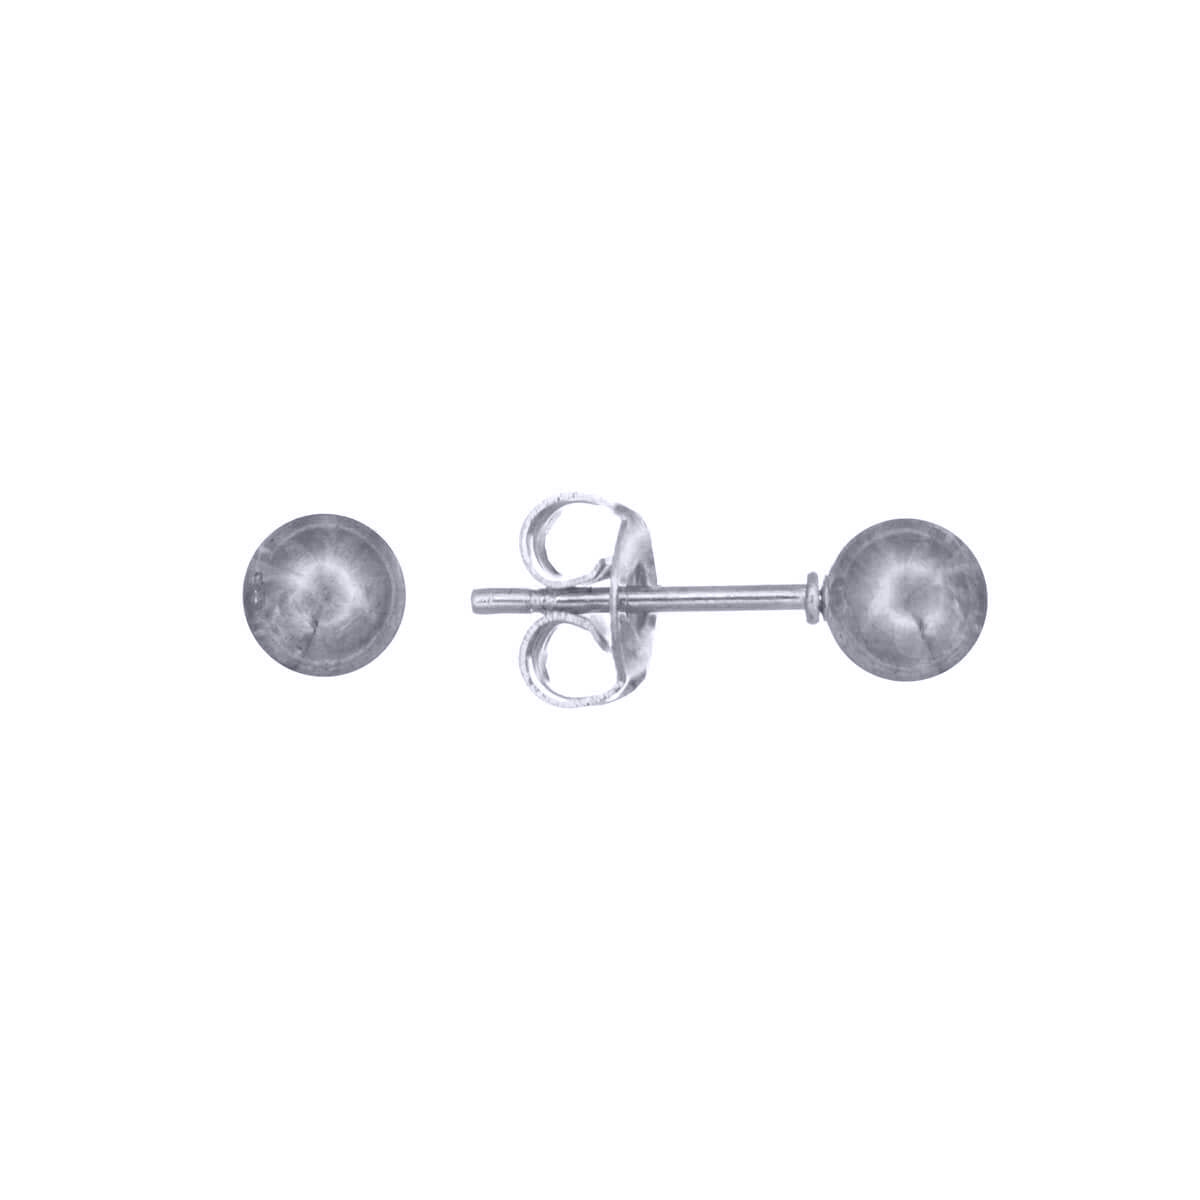 Steel ball earrings 5mm (steel 316L)